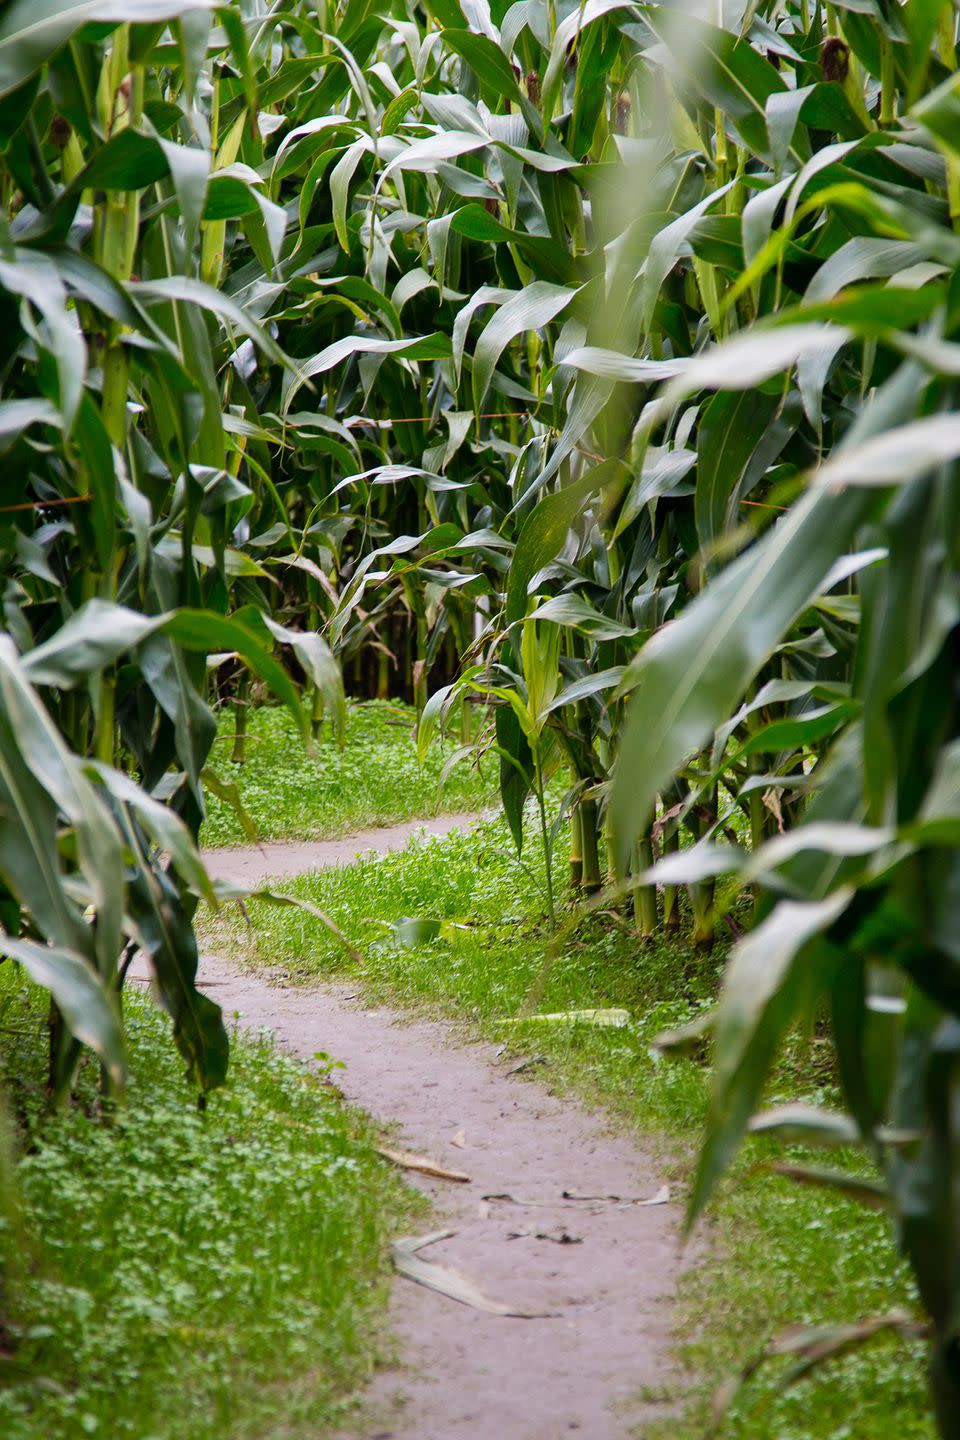 31) Verona Corn Maze in Aurora, Missouri